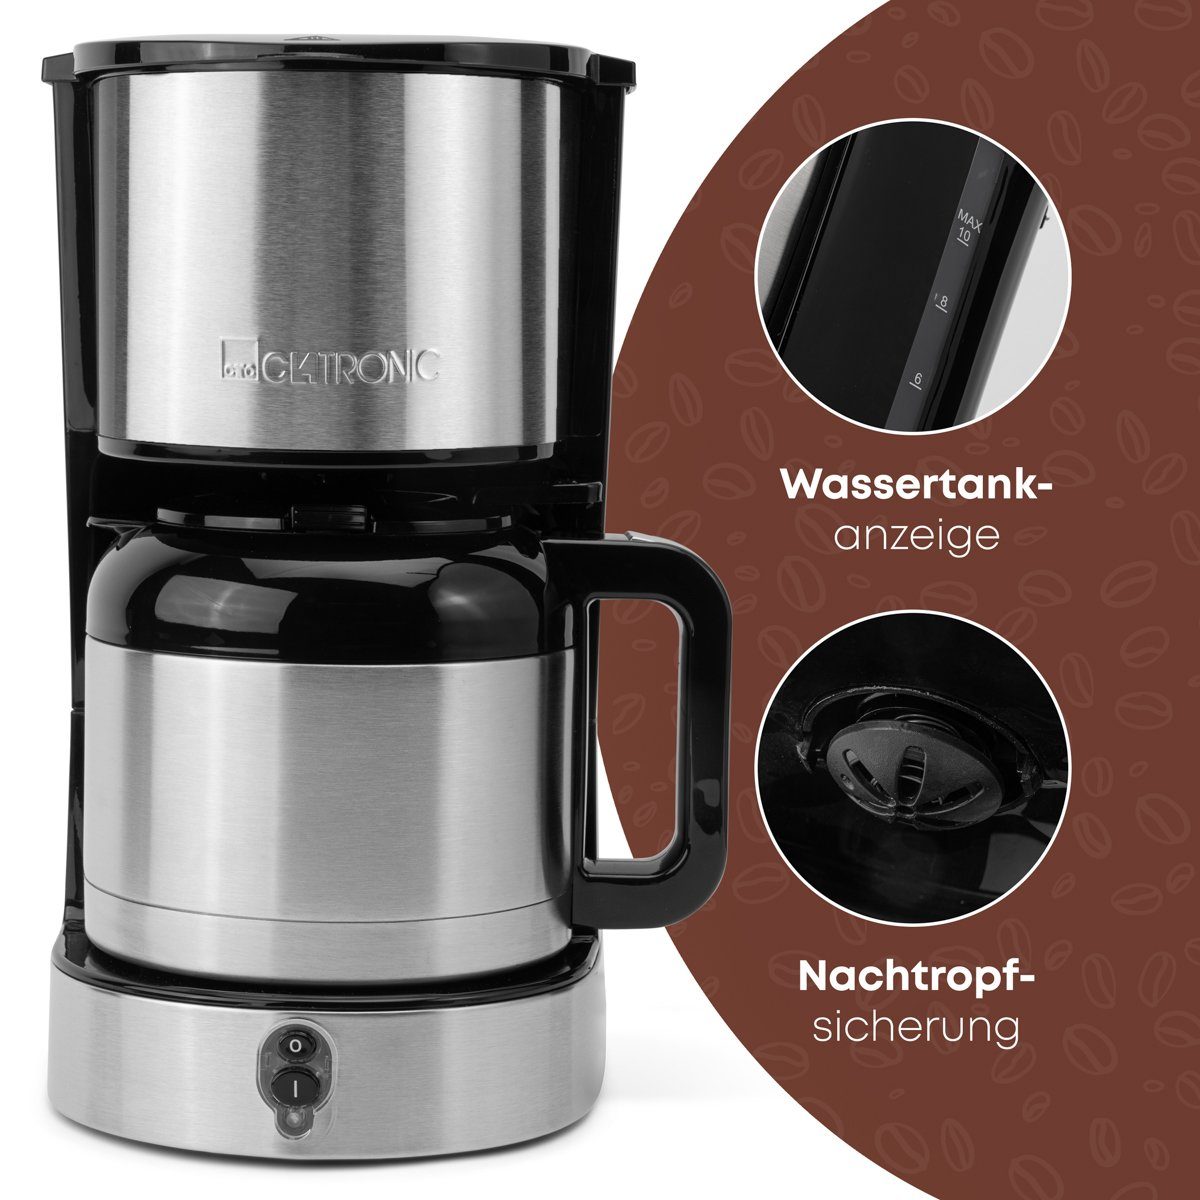 Thermoskanne 3805, CLATRONIC für KA Kaffee Tassen Filterkaffeemaschine mit 8–10